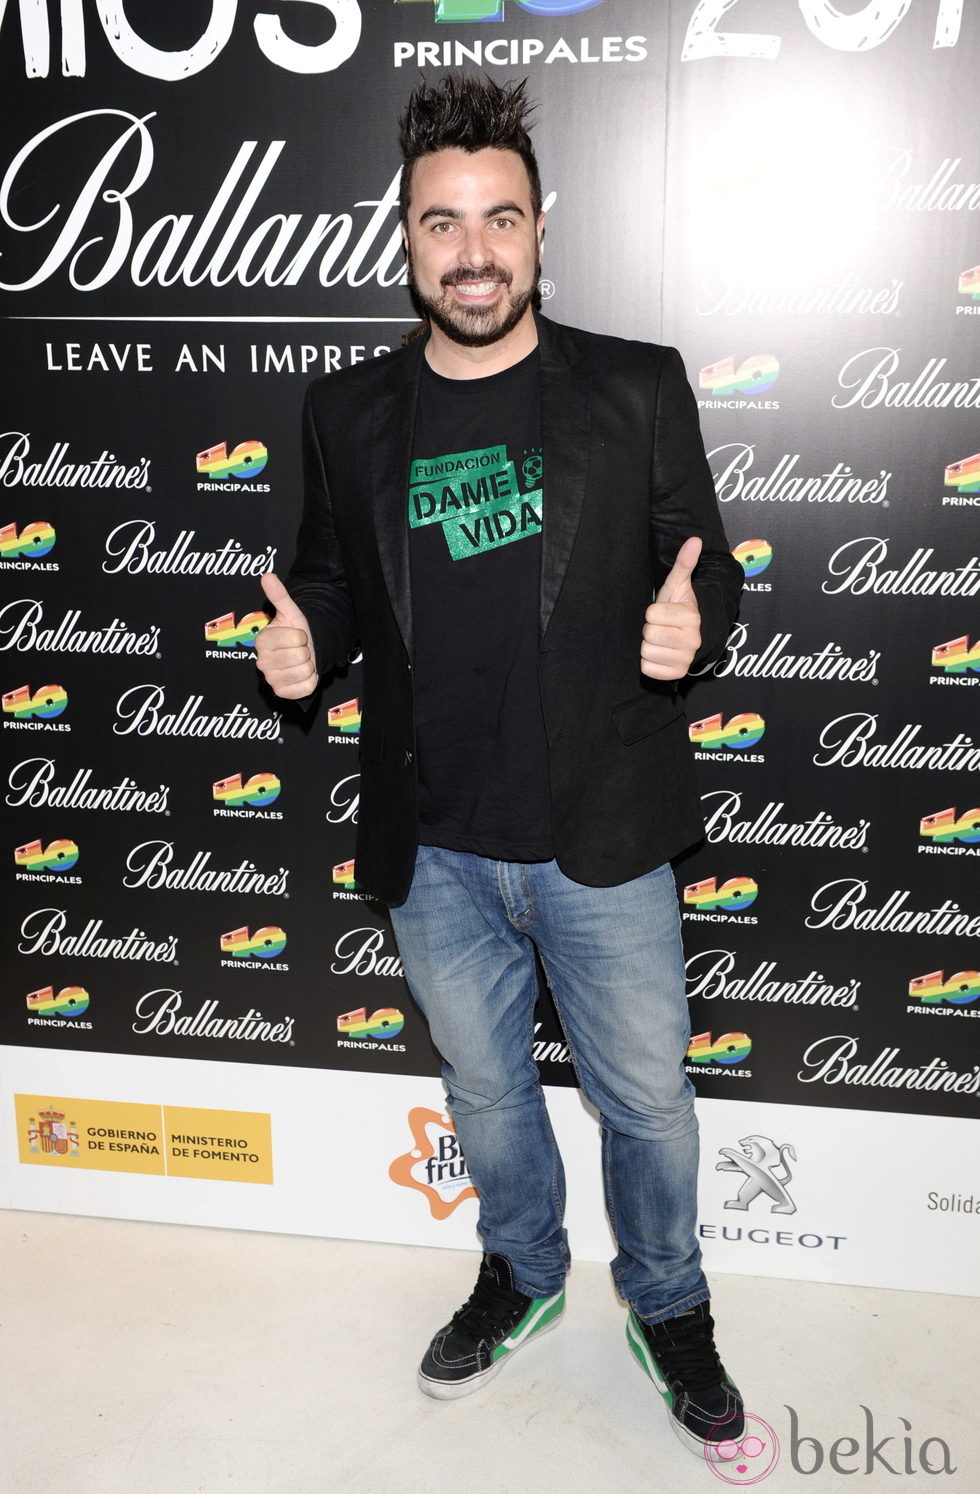 Iván Sevilla Pérez 'Huecco' en las nominaciones de los Premios 40 principales 2011